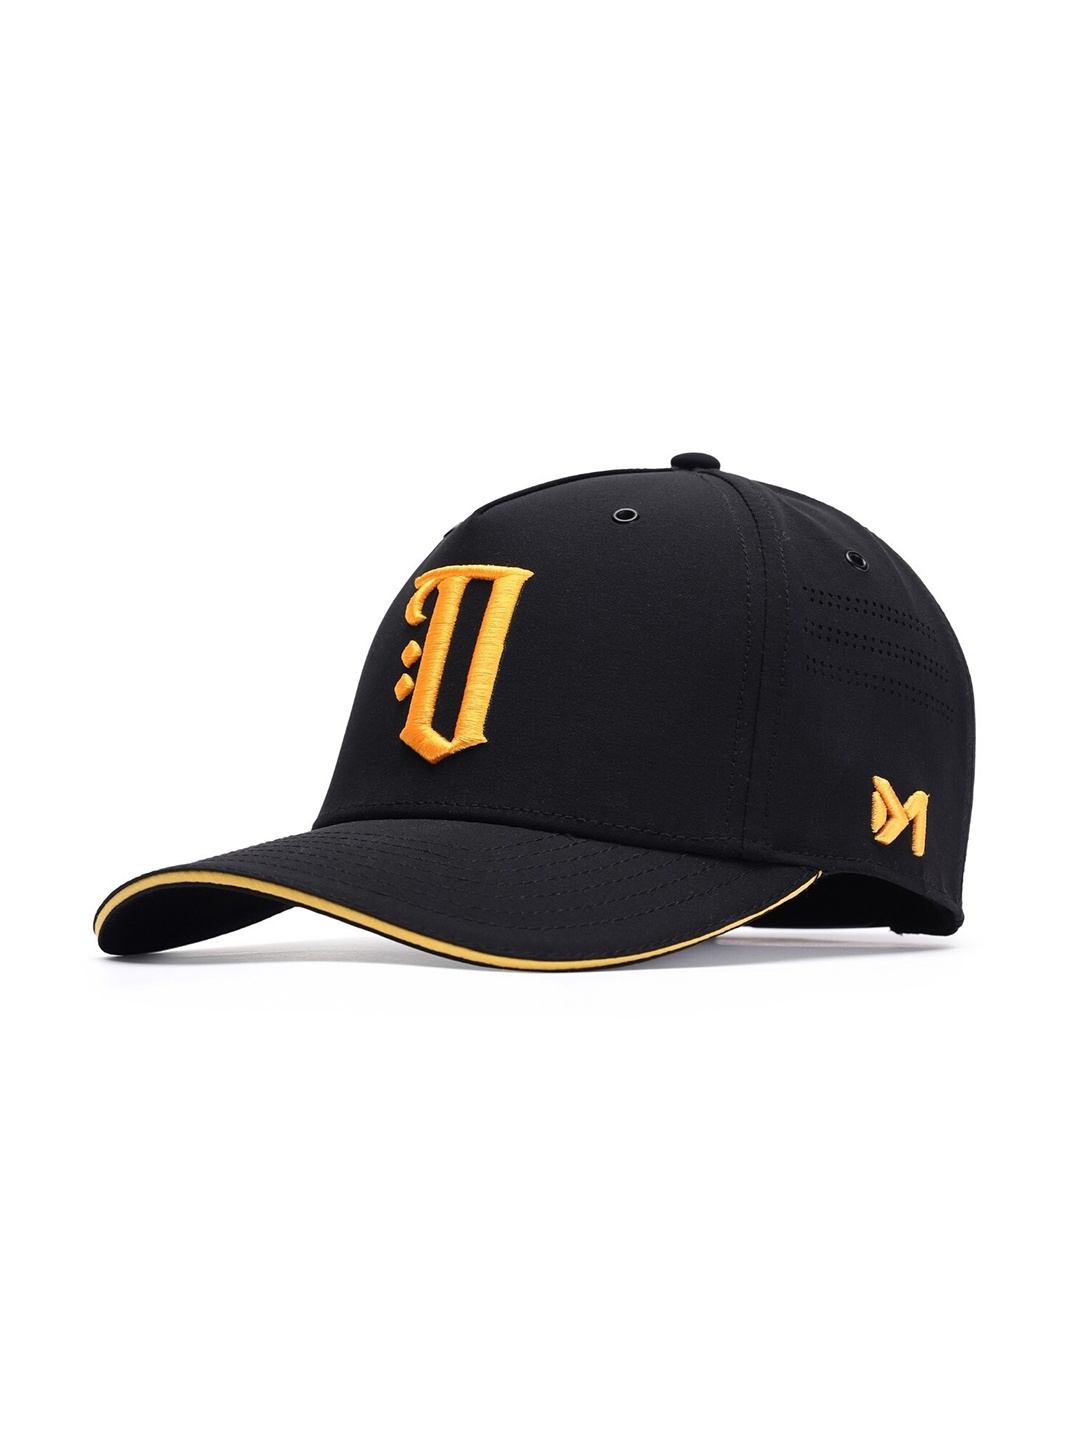 

LIT-AF Unisex Embroidered Baseball Cap, Black